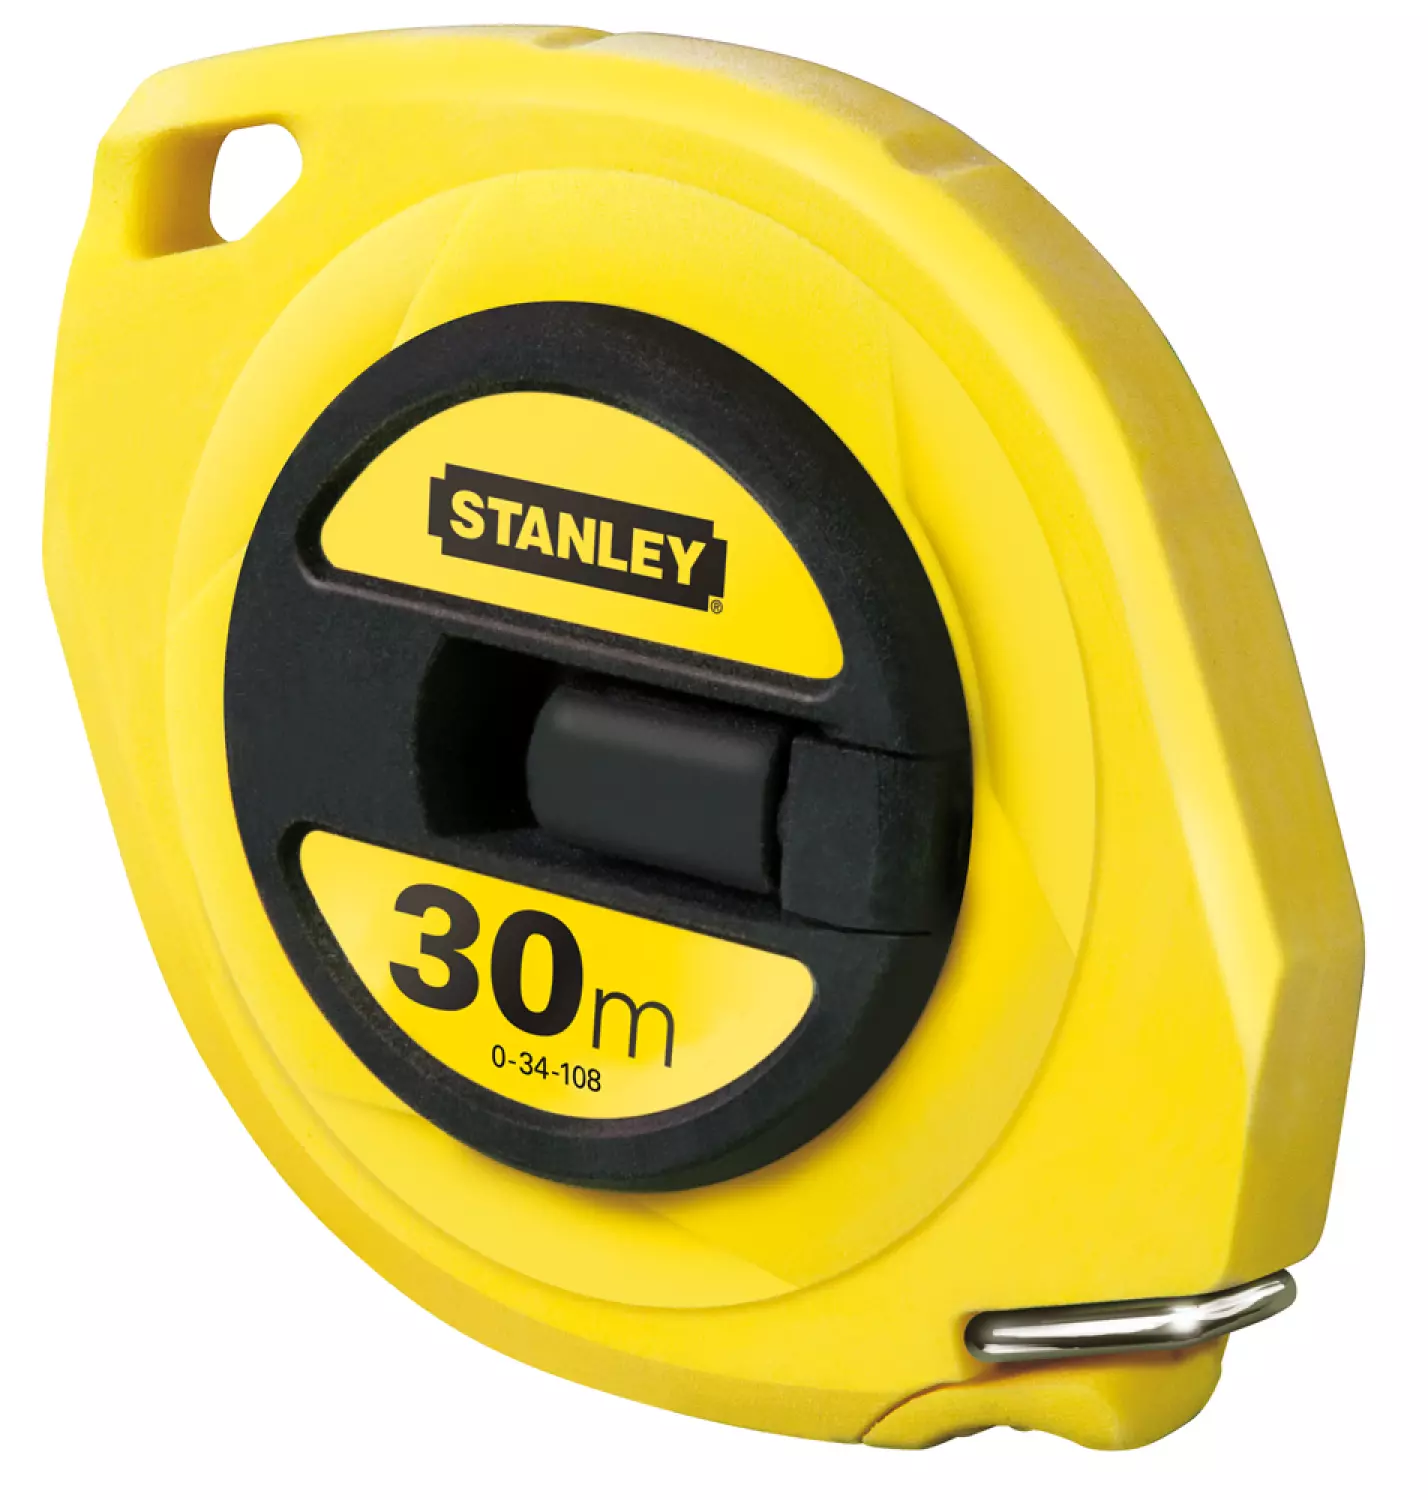 Stanley 0-34-108 - Mesure Longue Acier 30m - 9,5mm boîte fermée-image